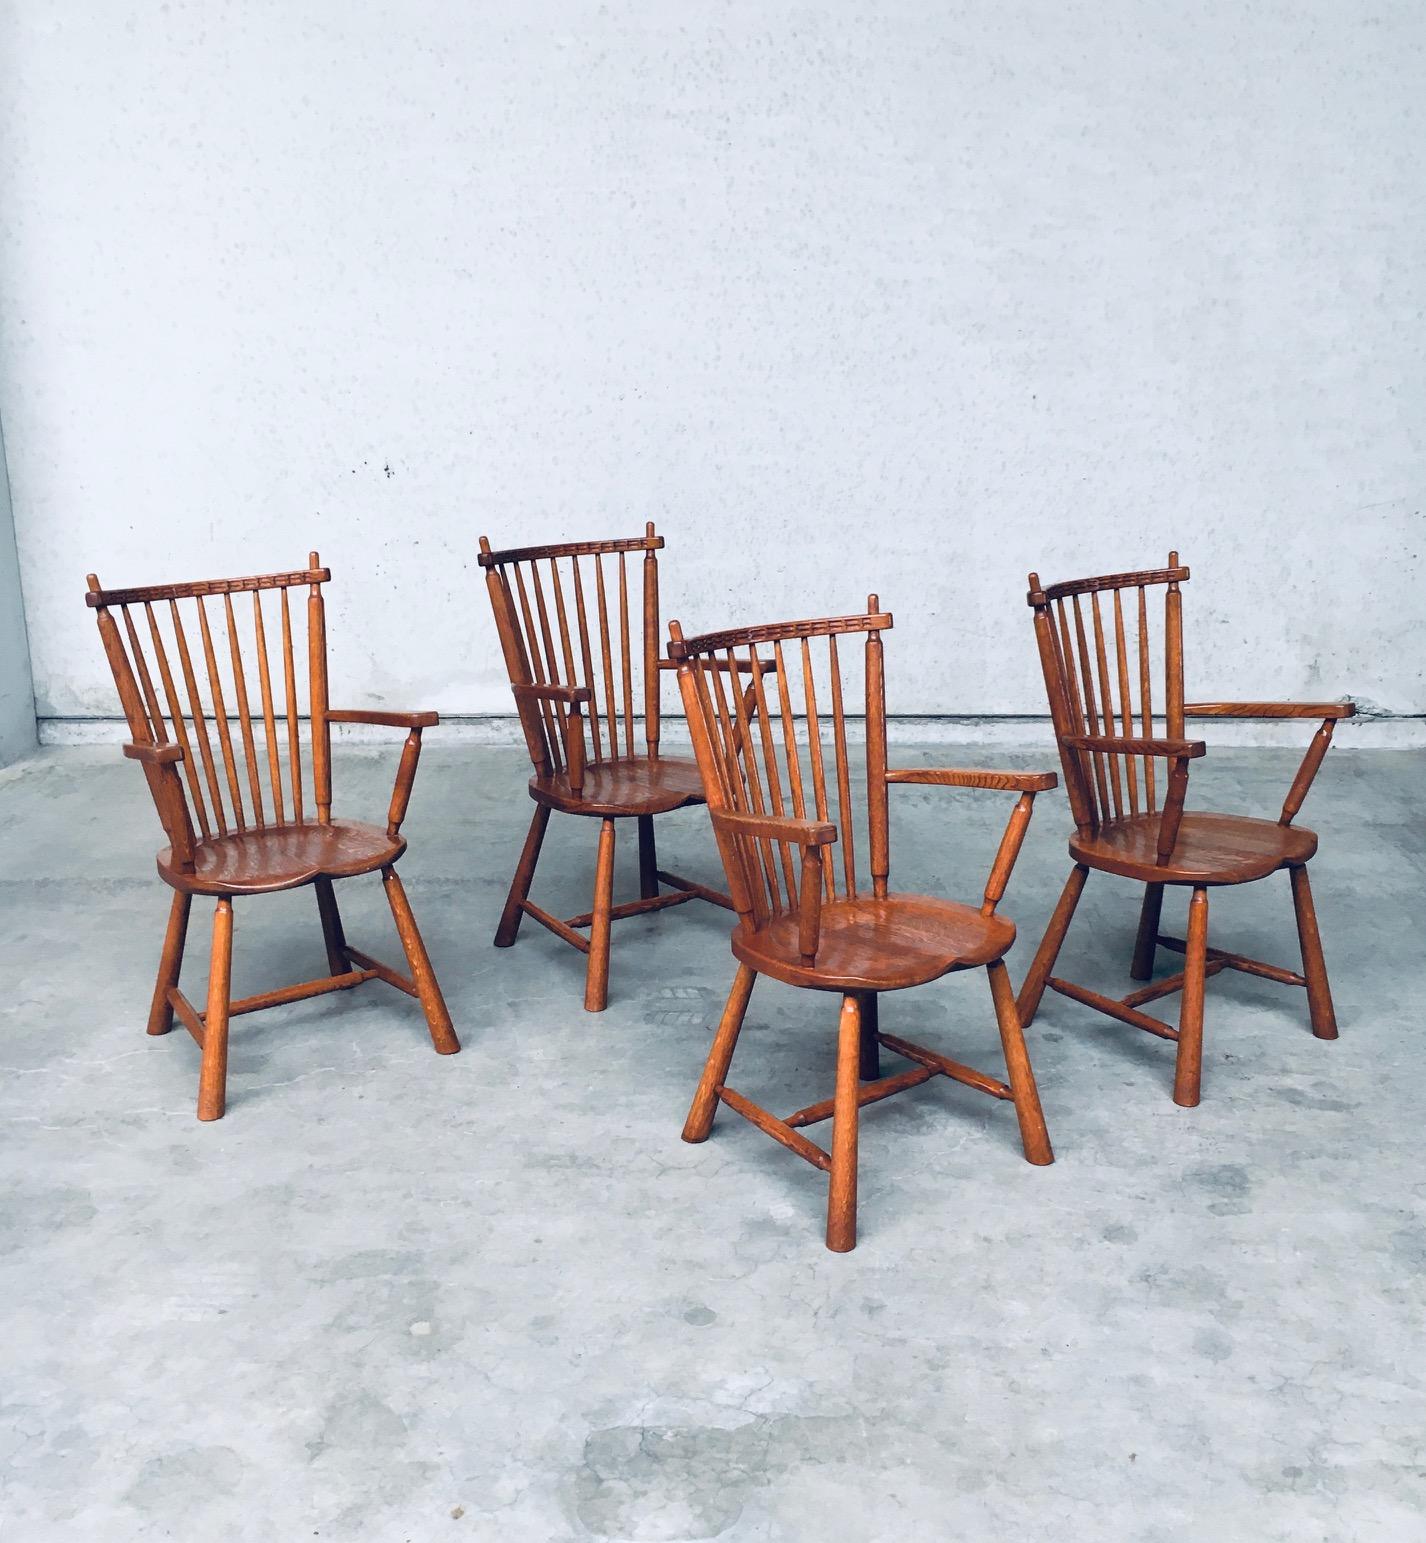 Vintage Midcentury Dutch Design Eichenholz Sessel Satz von 4 von De Ster Gelderland. Hergestellt in den Niederlanden, 1960er Jahre. Stühle aus massiver Eiche, gedrechselt und geschnitzt. Schöne Form und Details. Alle Stühle sind in sehr gutem,